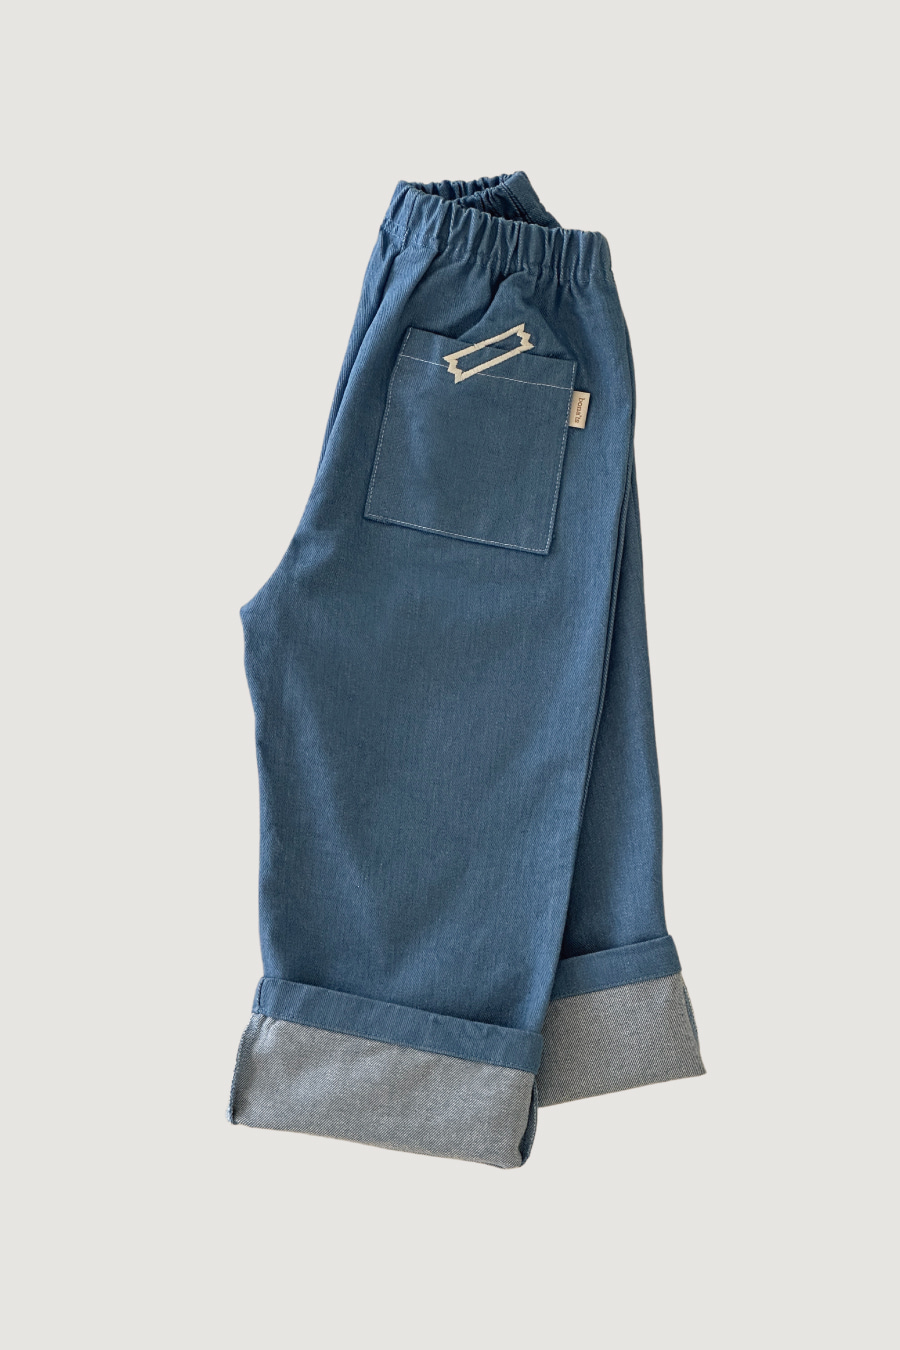 Wide denim pants (Blue jeans)